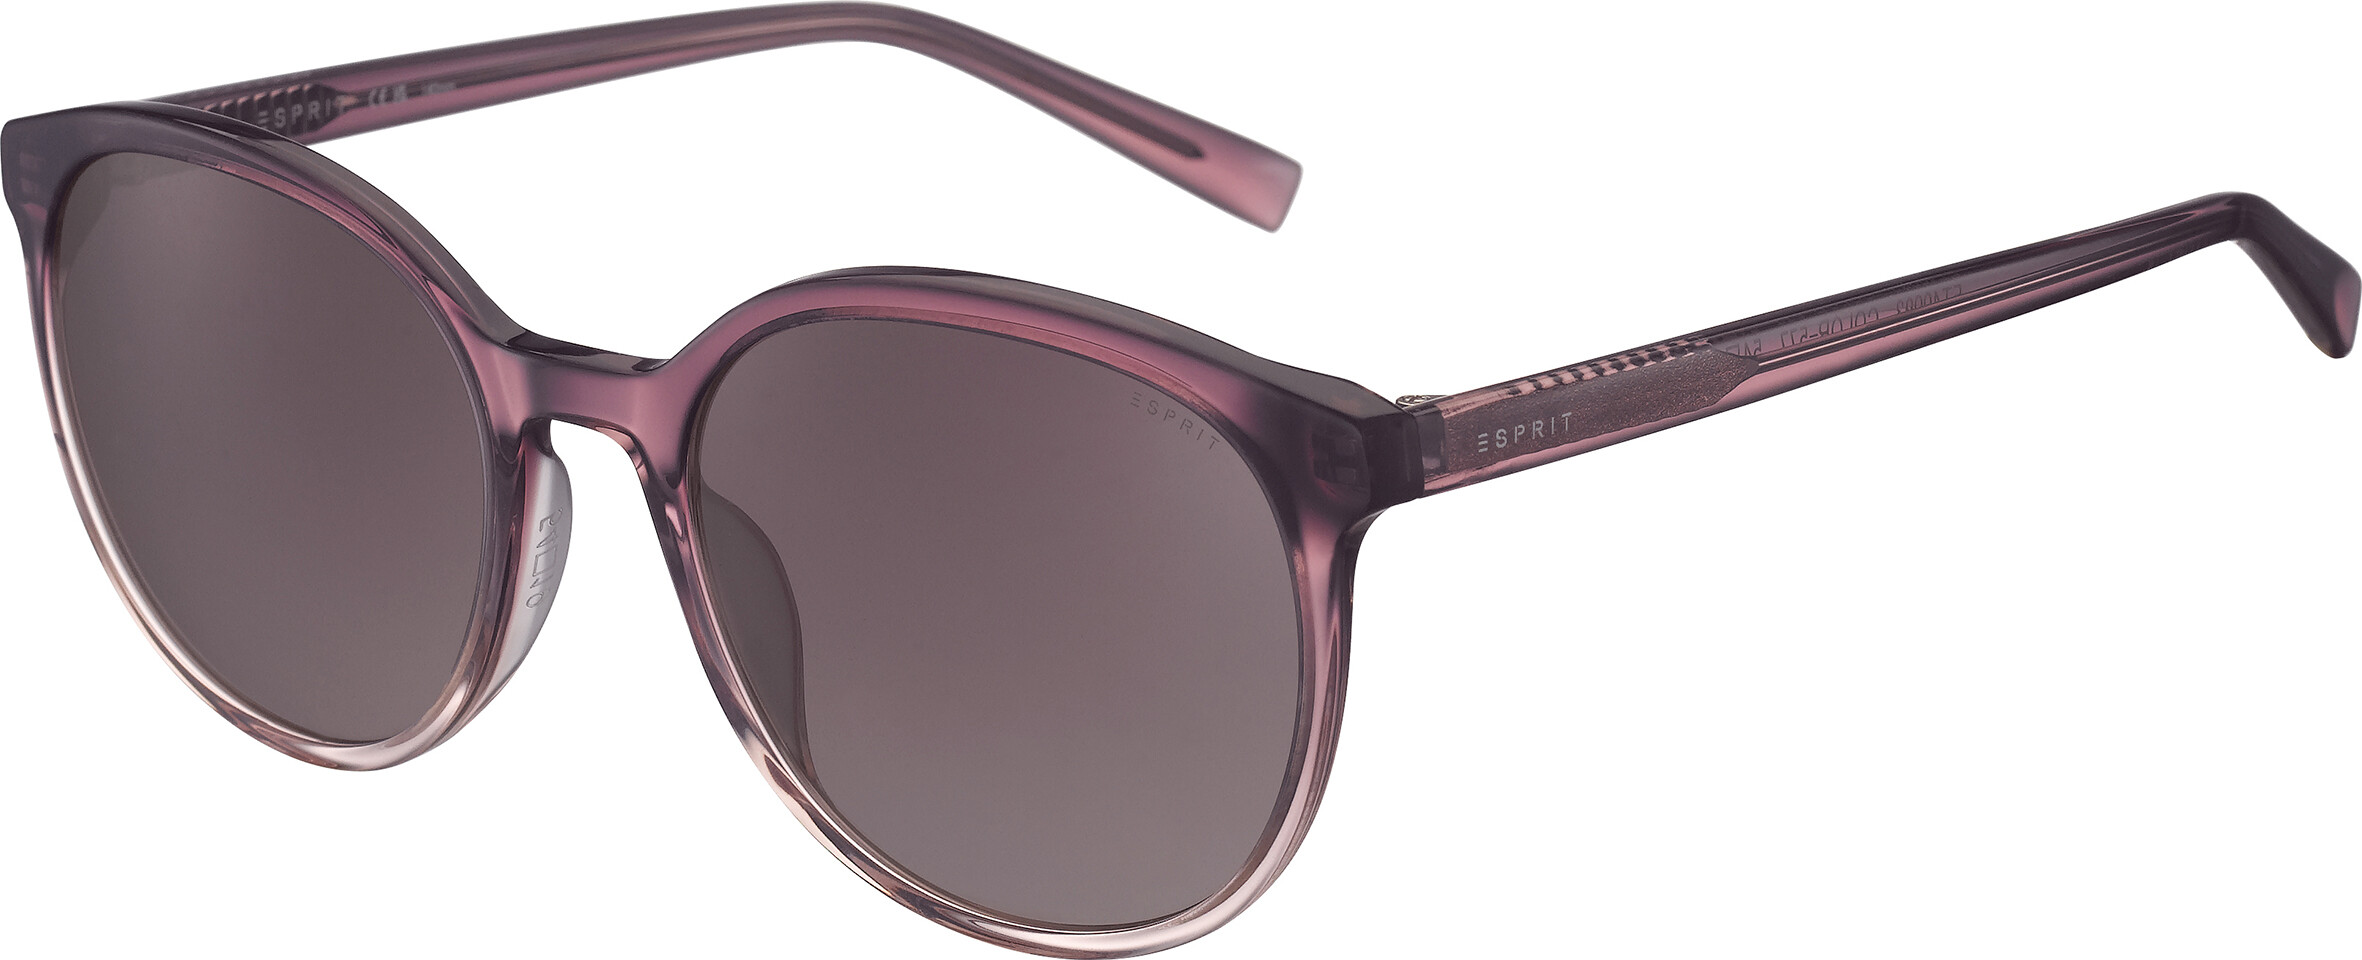 [products.image.front] Esprit 40093 577 Sonnenbrille